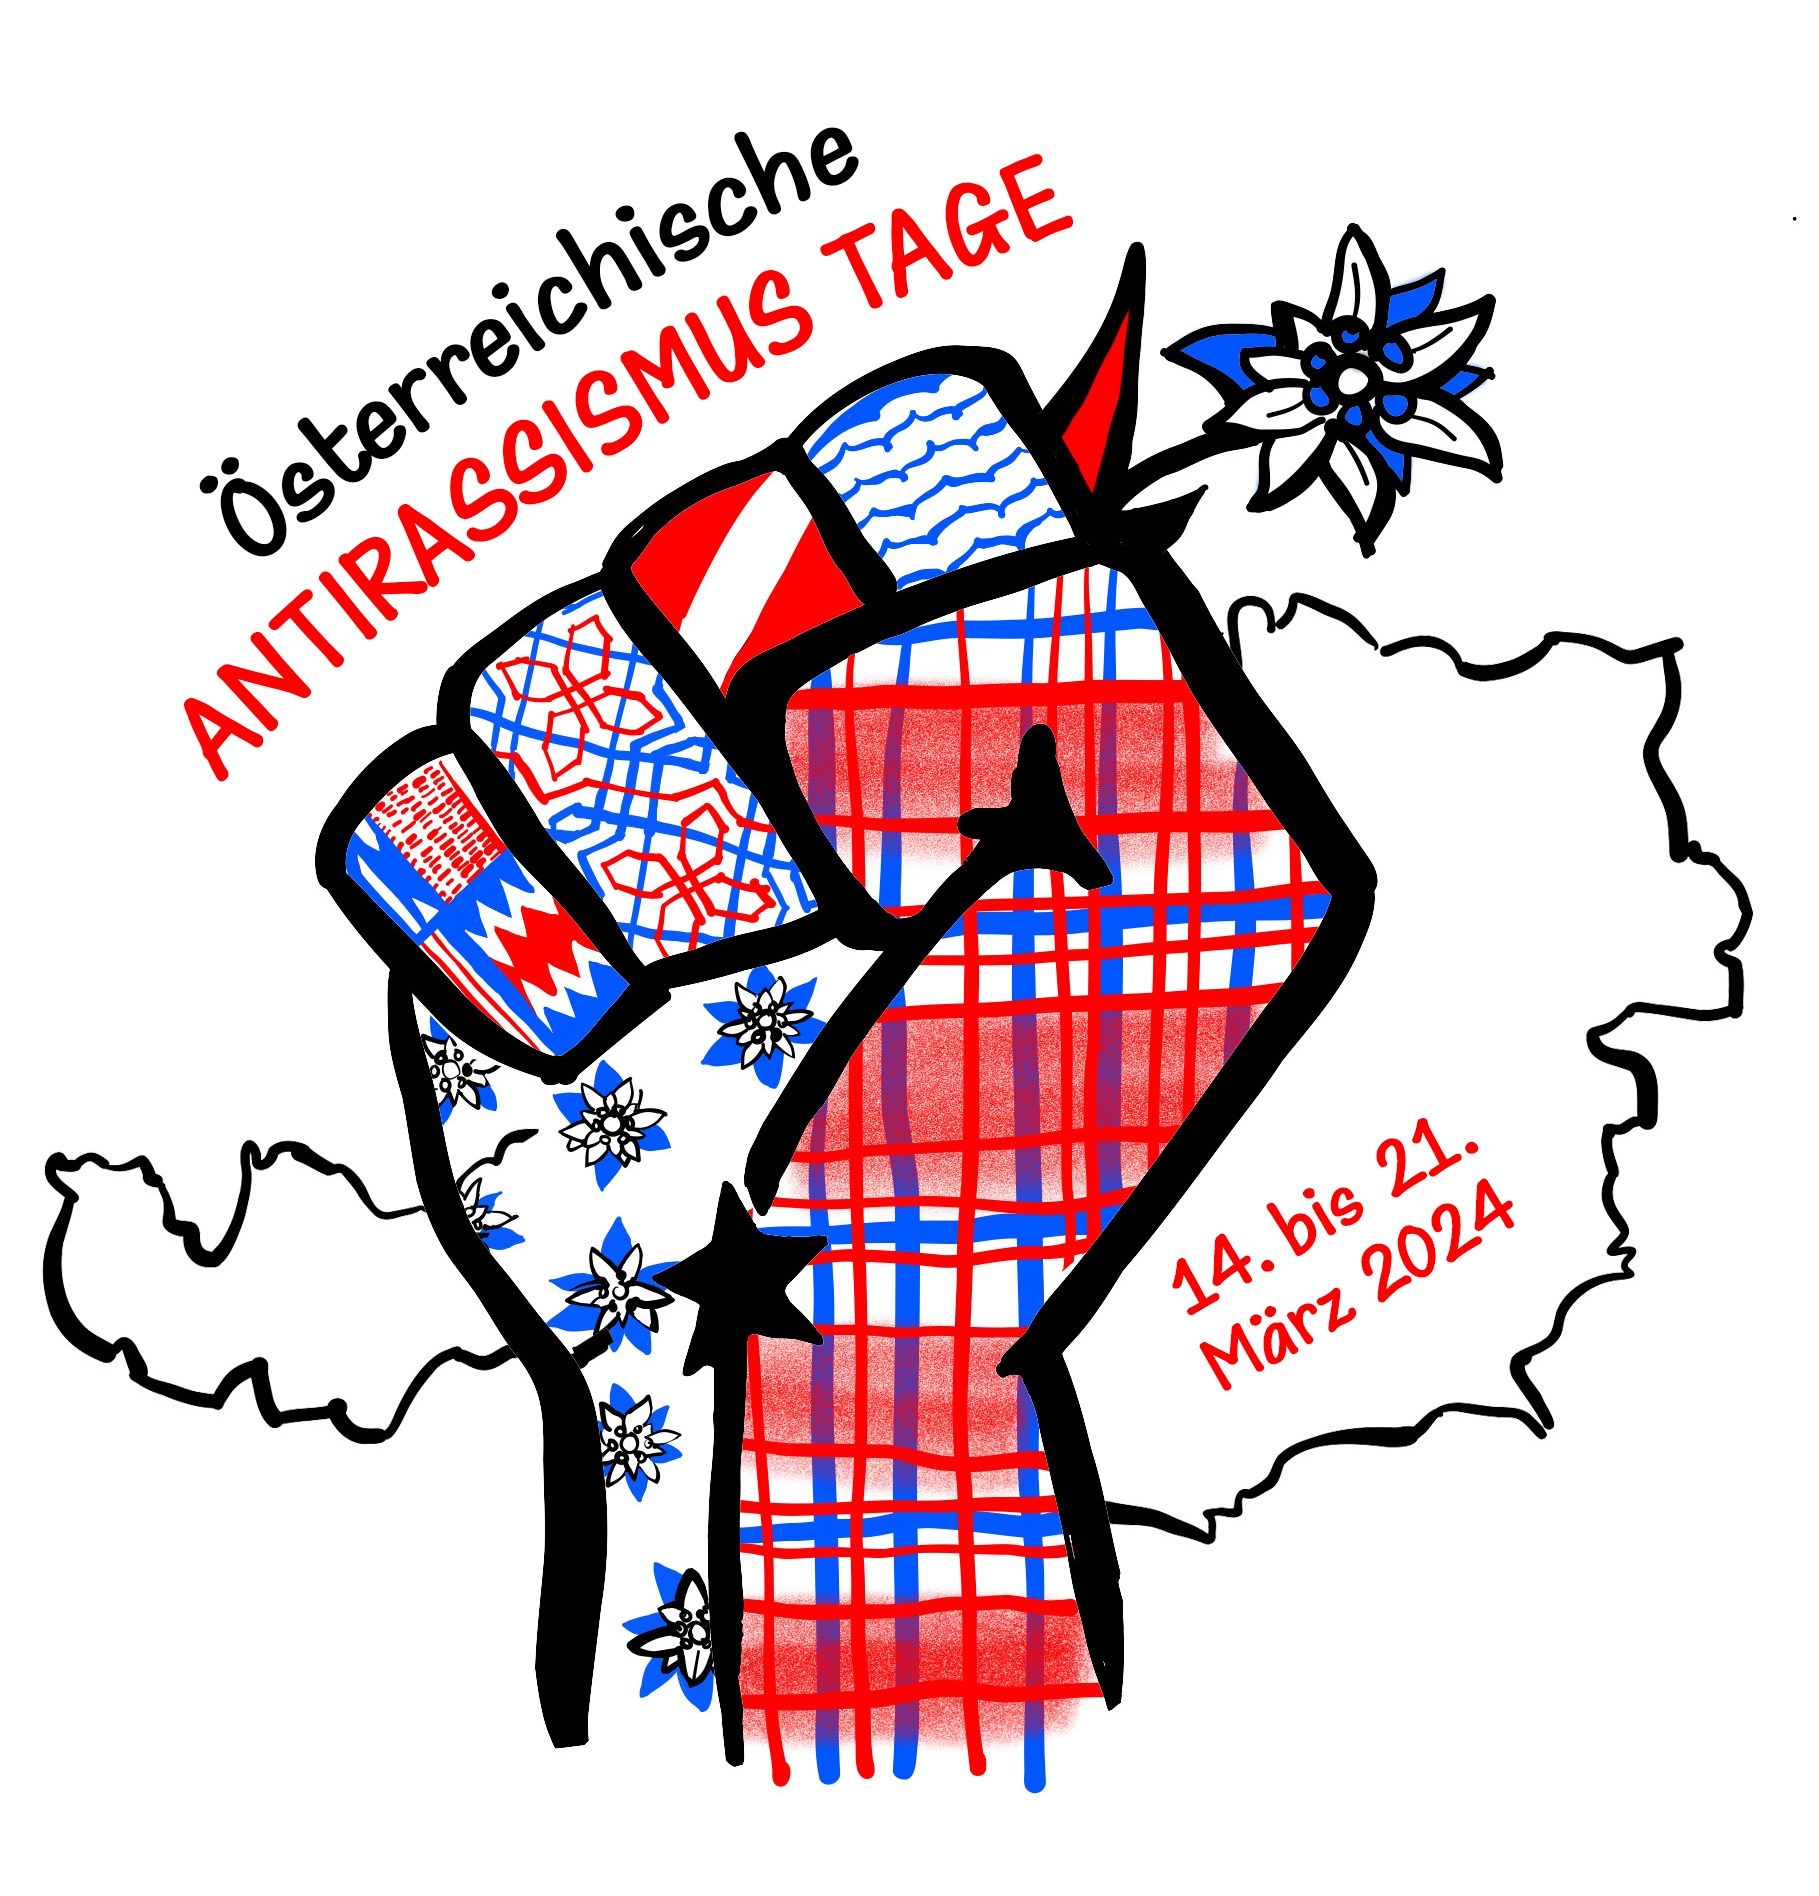 Erste Österreichische Antirassismus.Tage mit Messe in der Central European University Wien.